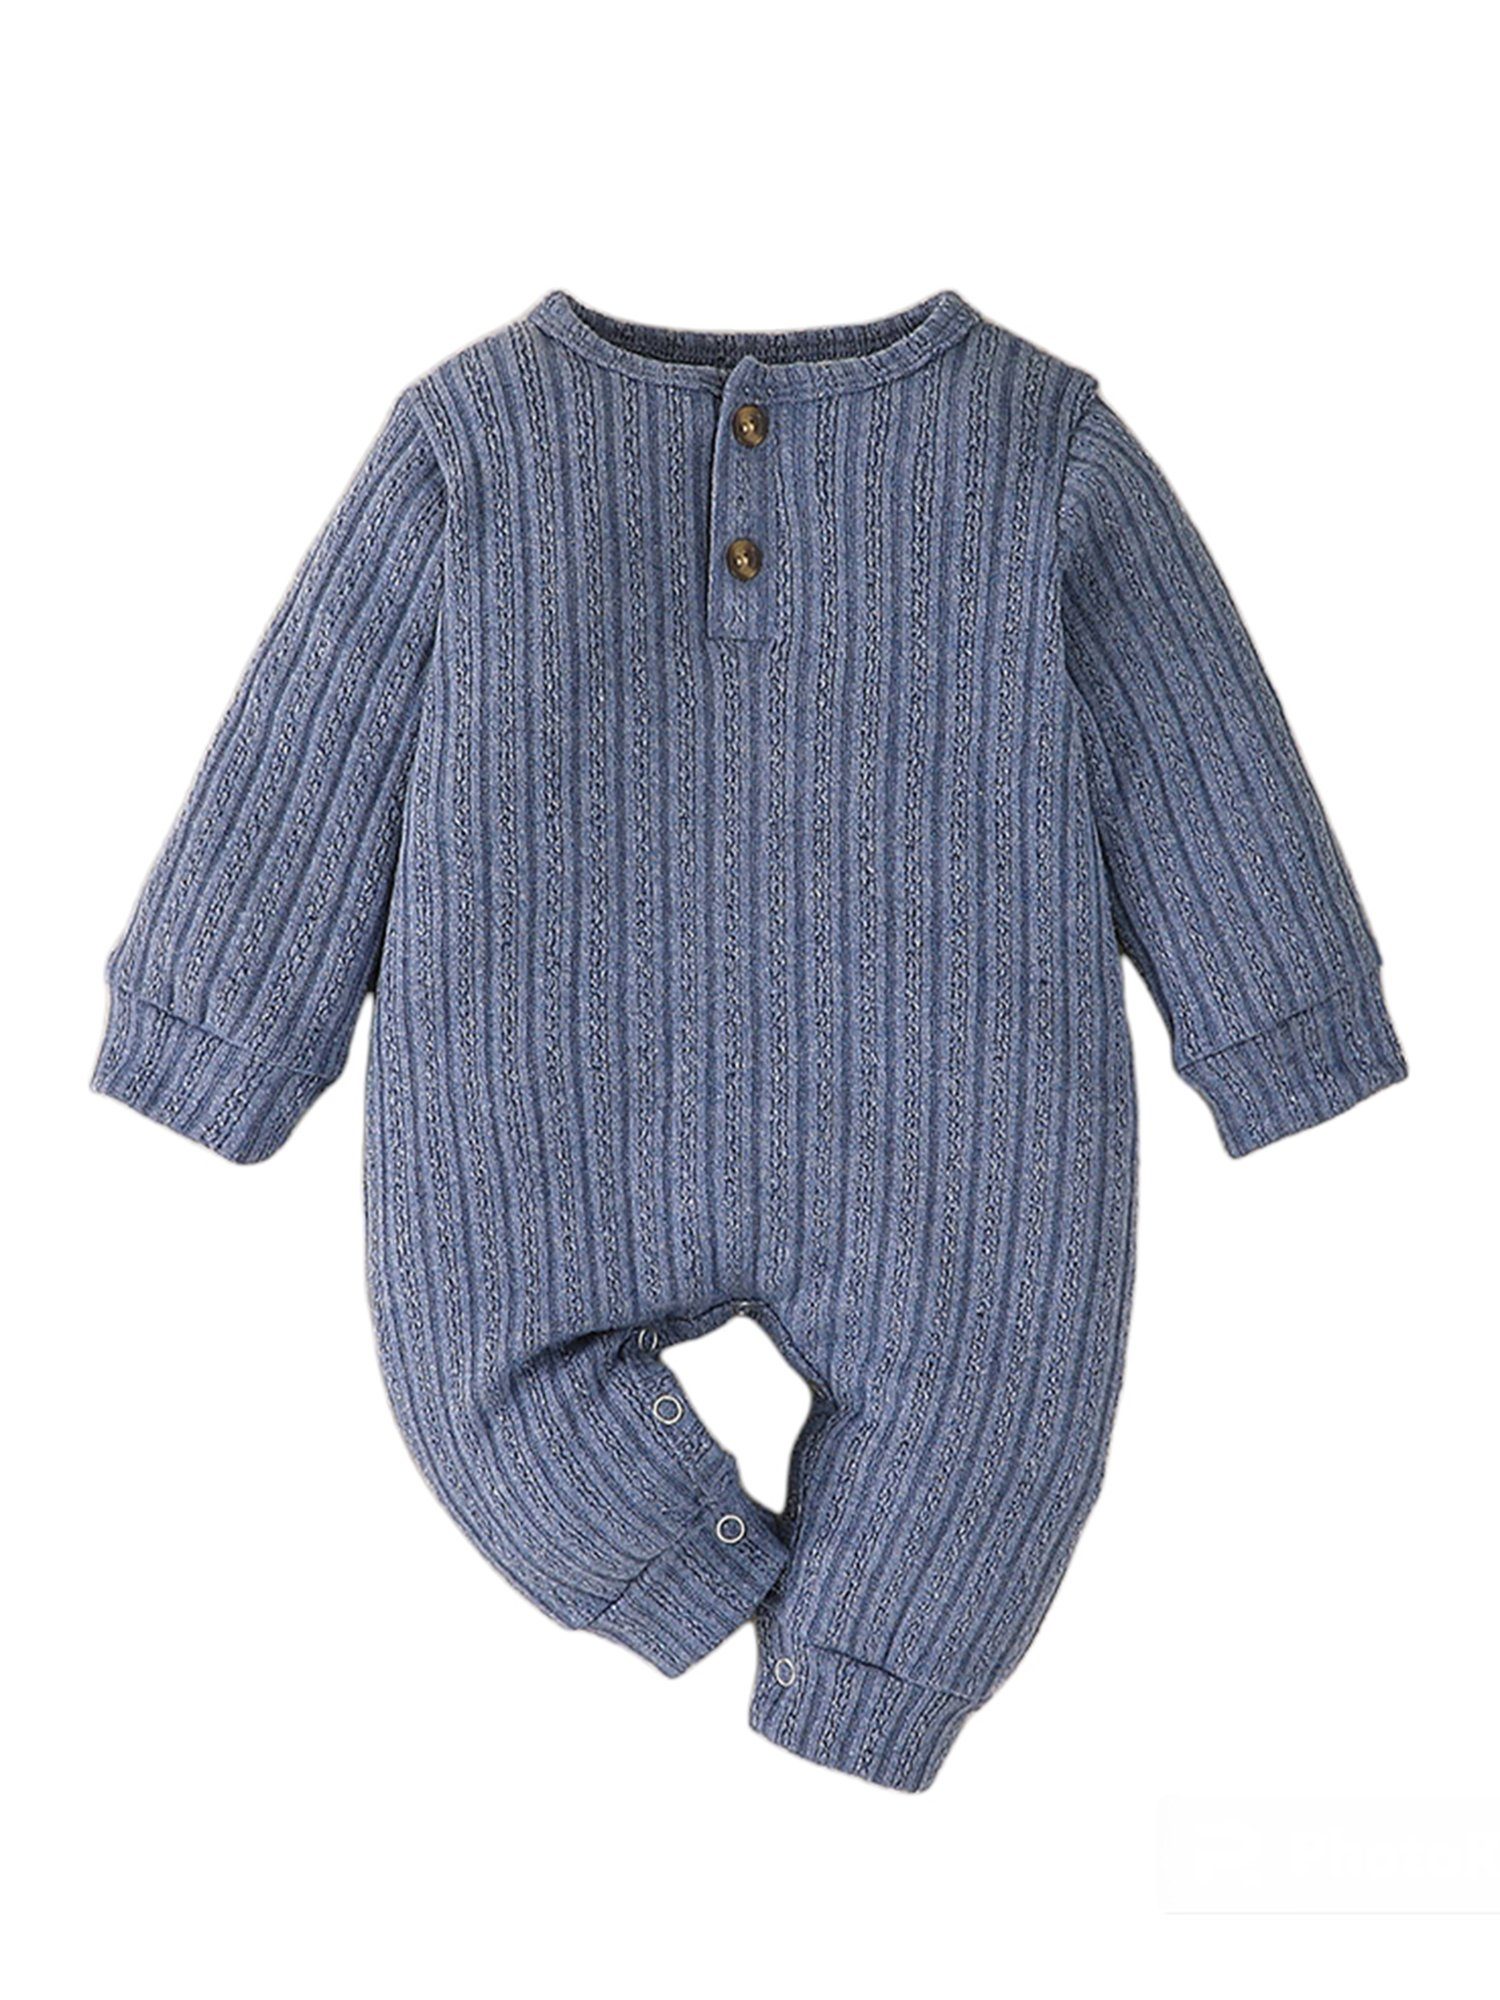 Strampler Einfarbiger Unisex Tiefes Blau Strampler Baby mit Jersey Lapastyle langärmliger Anzug Knopfverschluss für